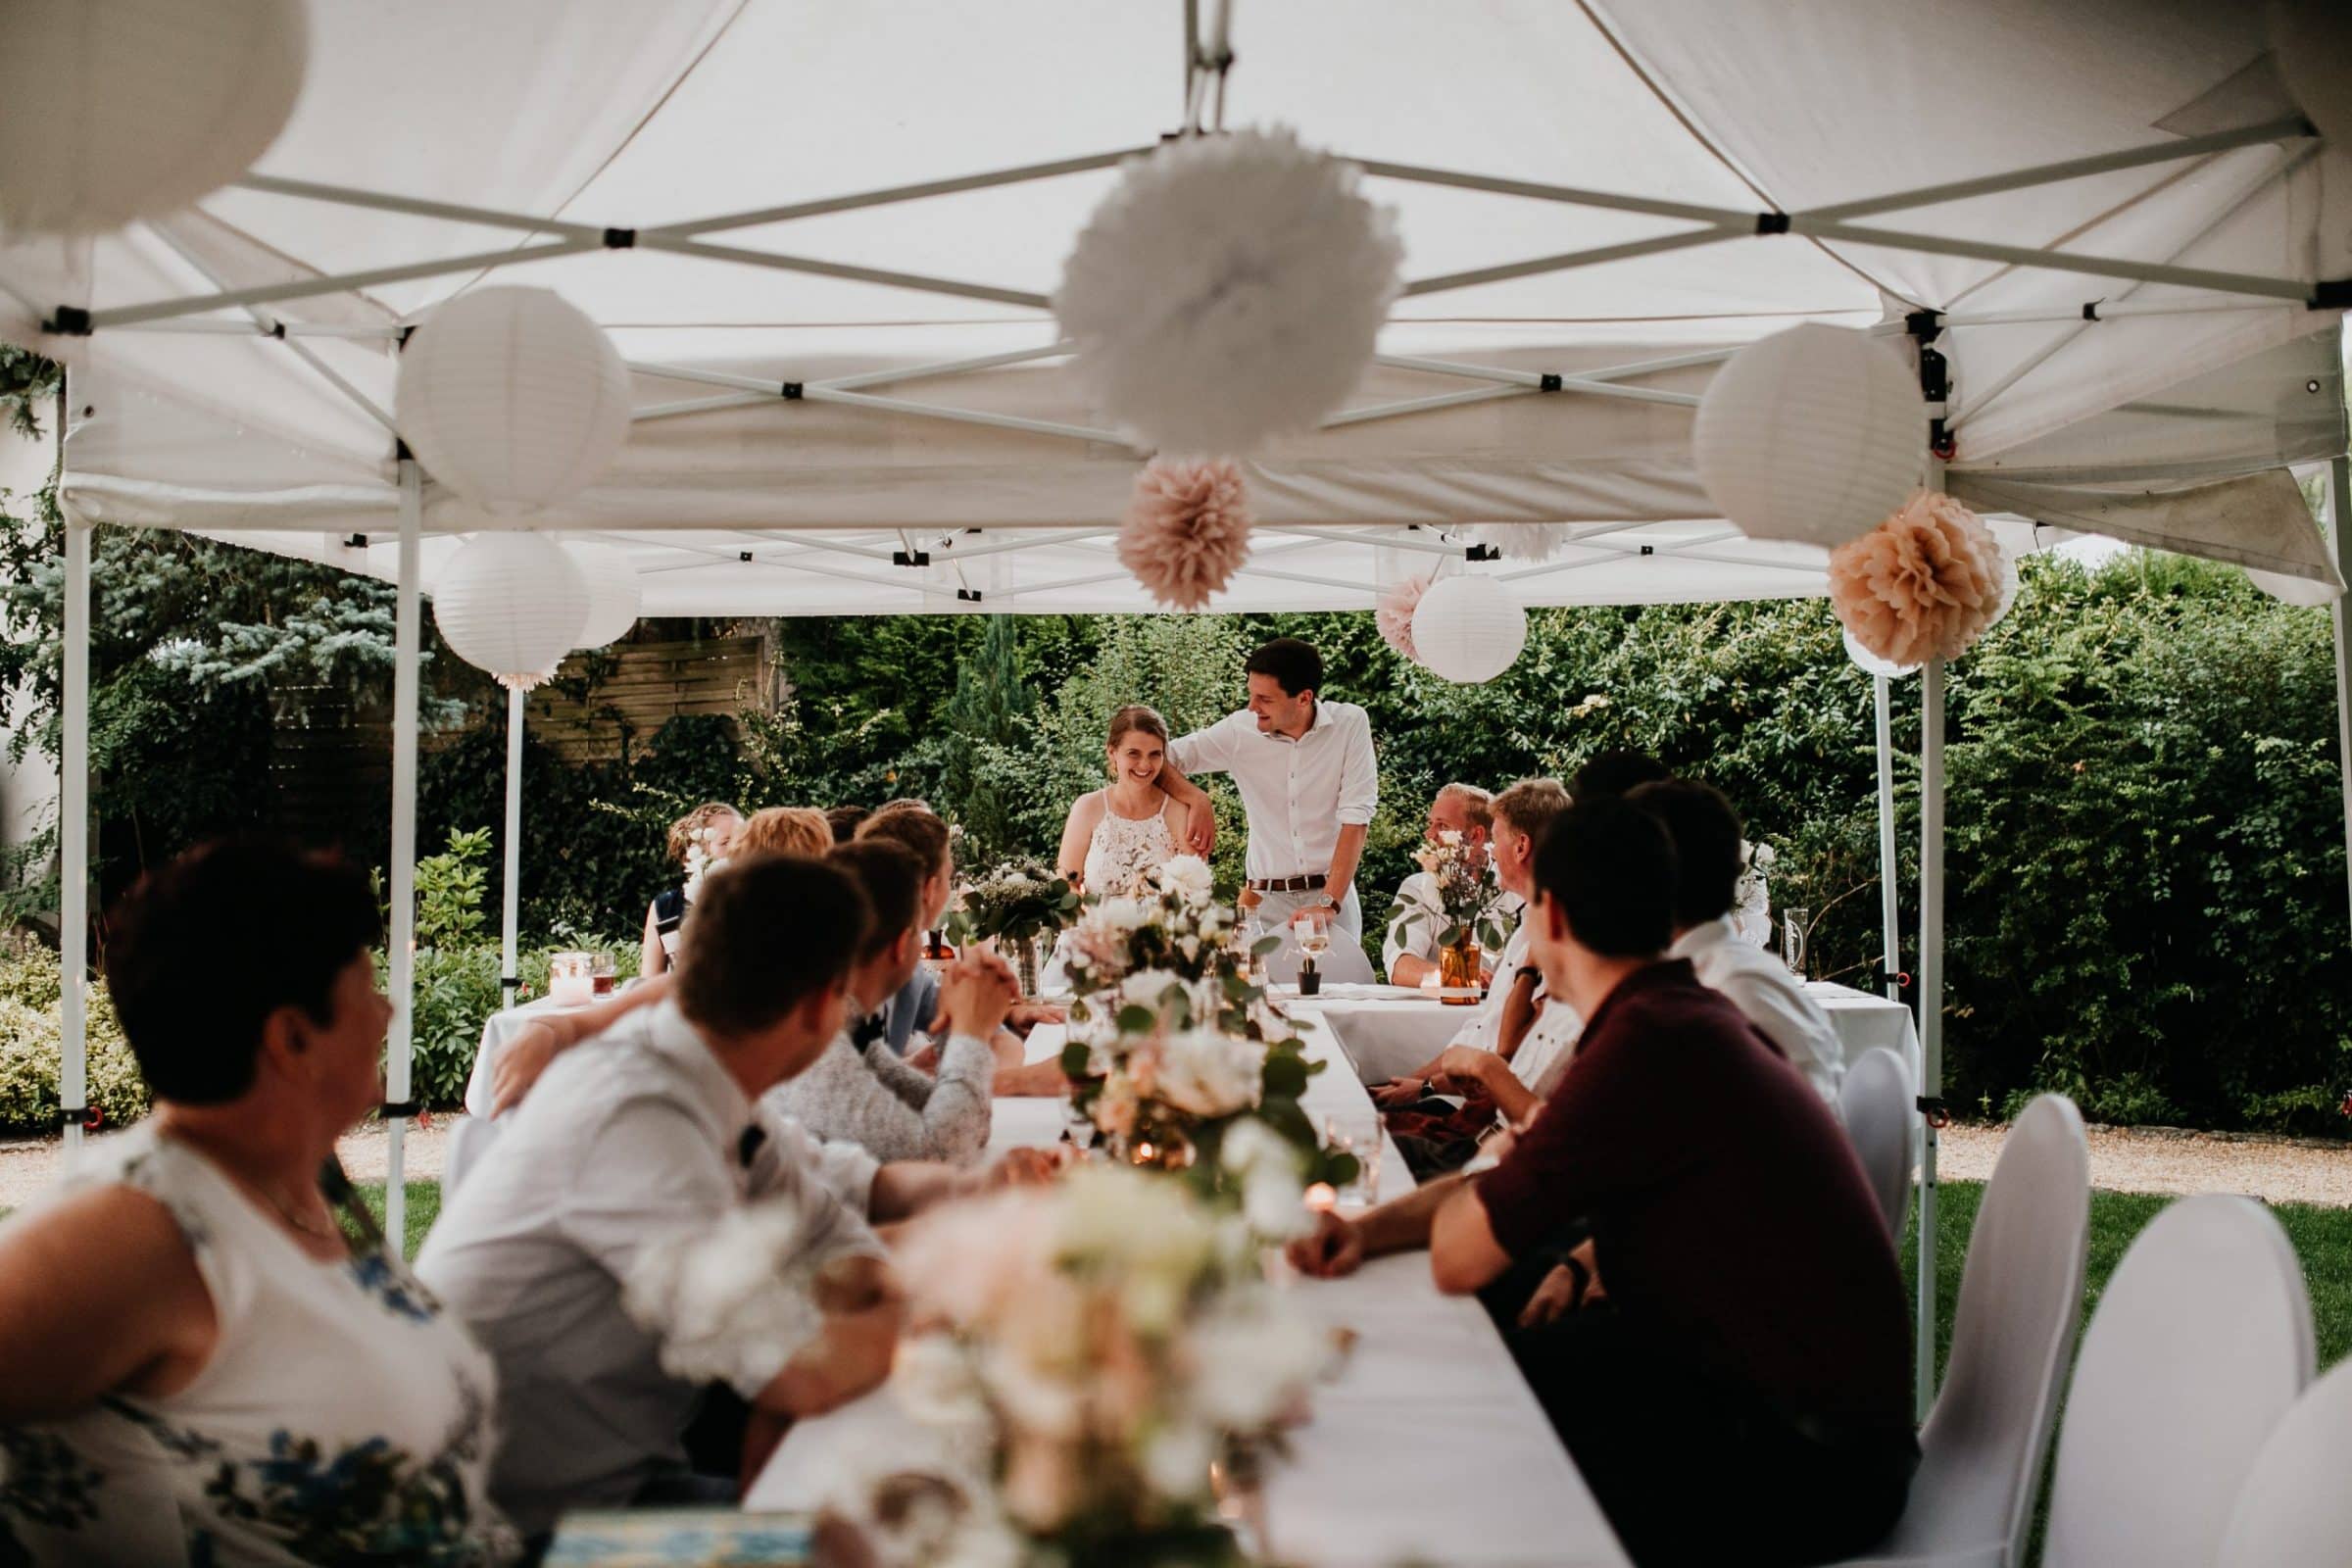 wedding guests, laughter, laughing, table decor, garden wedding, garden tent, hochzeitsgäste, zelt